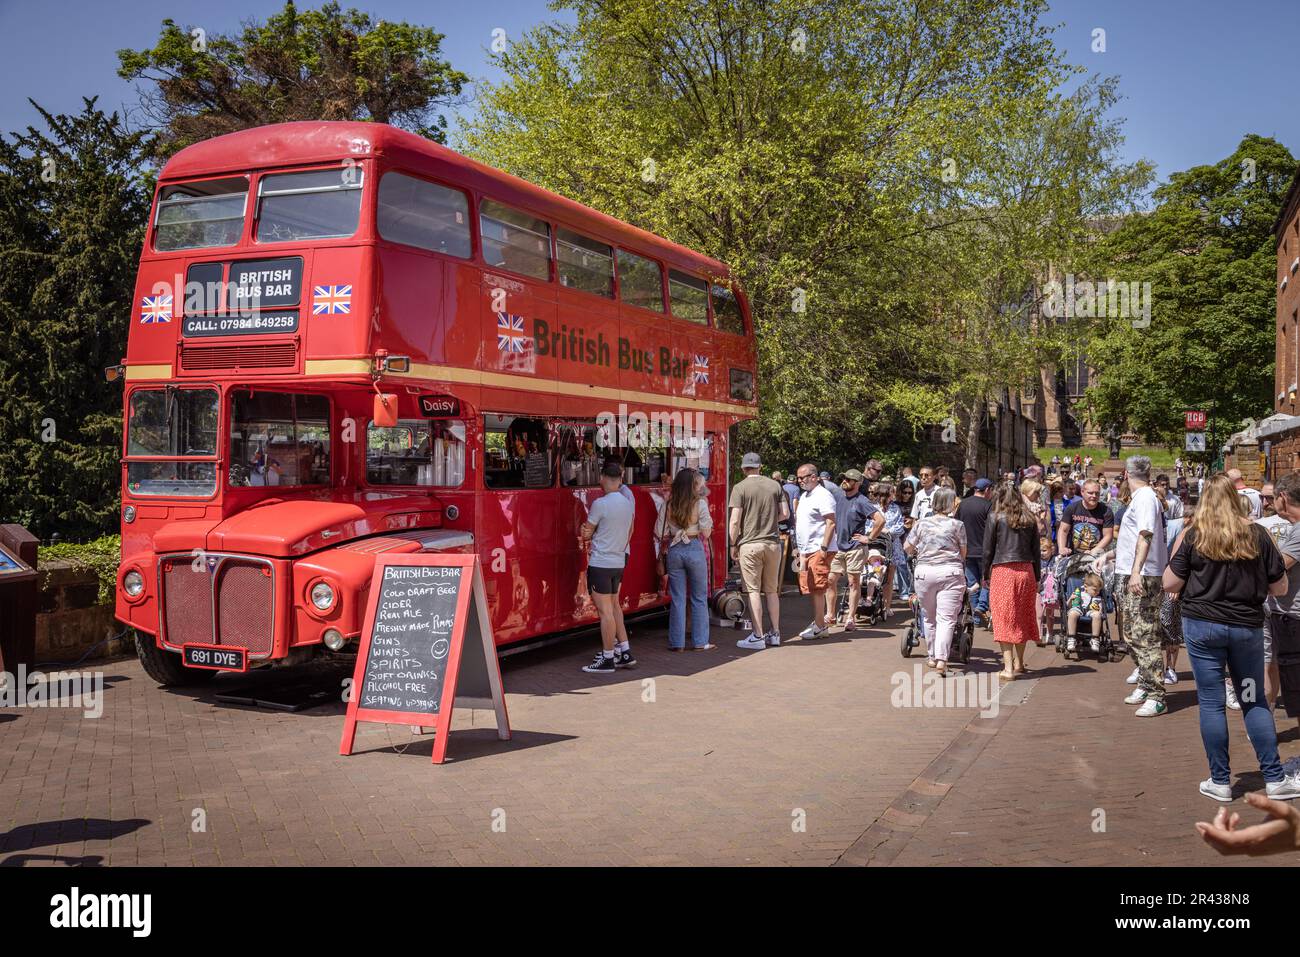 Persone che fanno la fila per acquistare un drink al British Bus Bar, un autobus rosso a due piani riproposto, durante il Lichfield Food Festival. Foto Stock